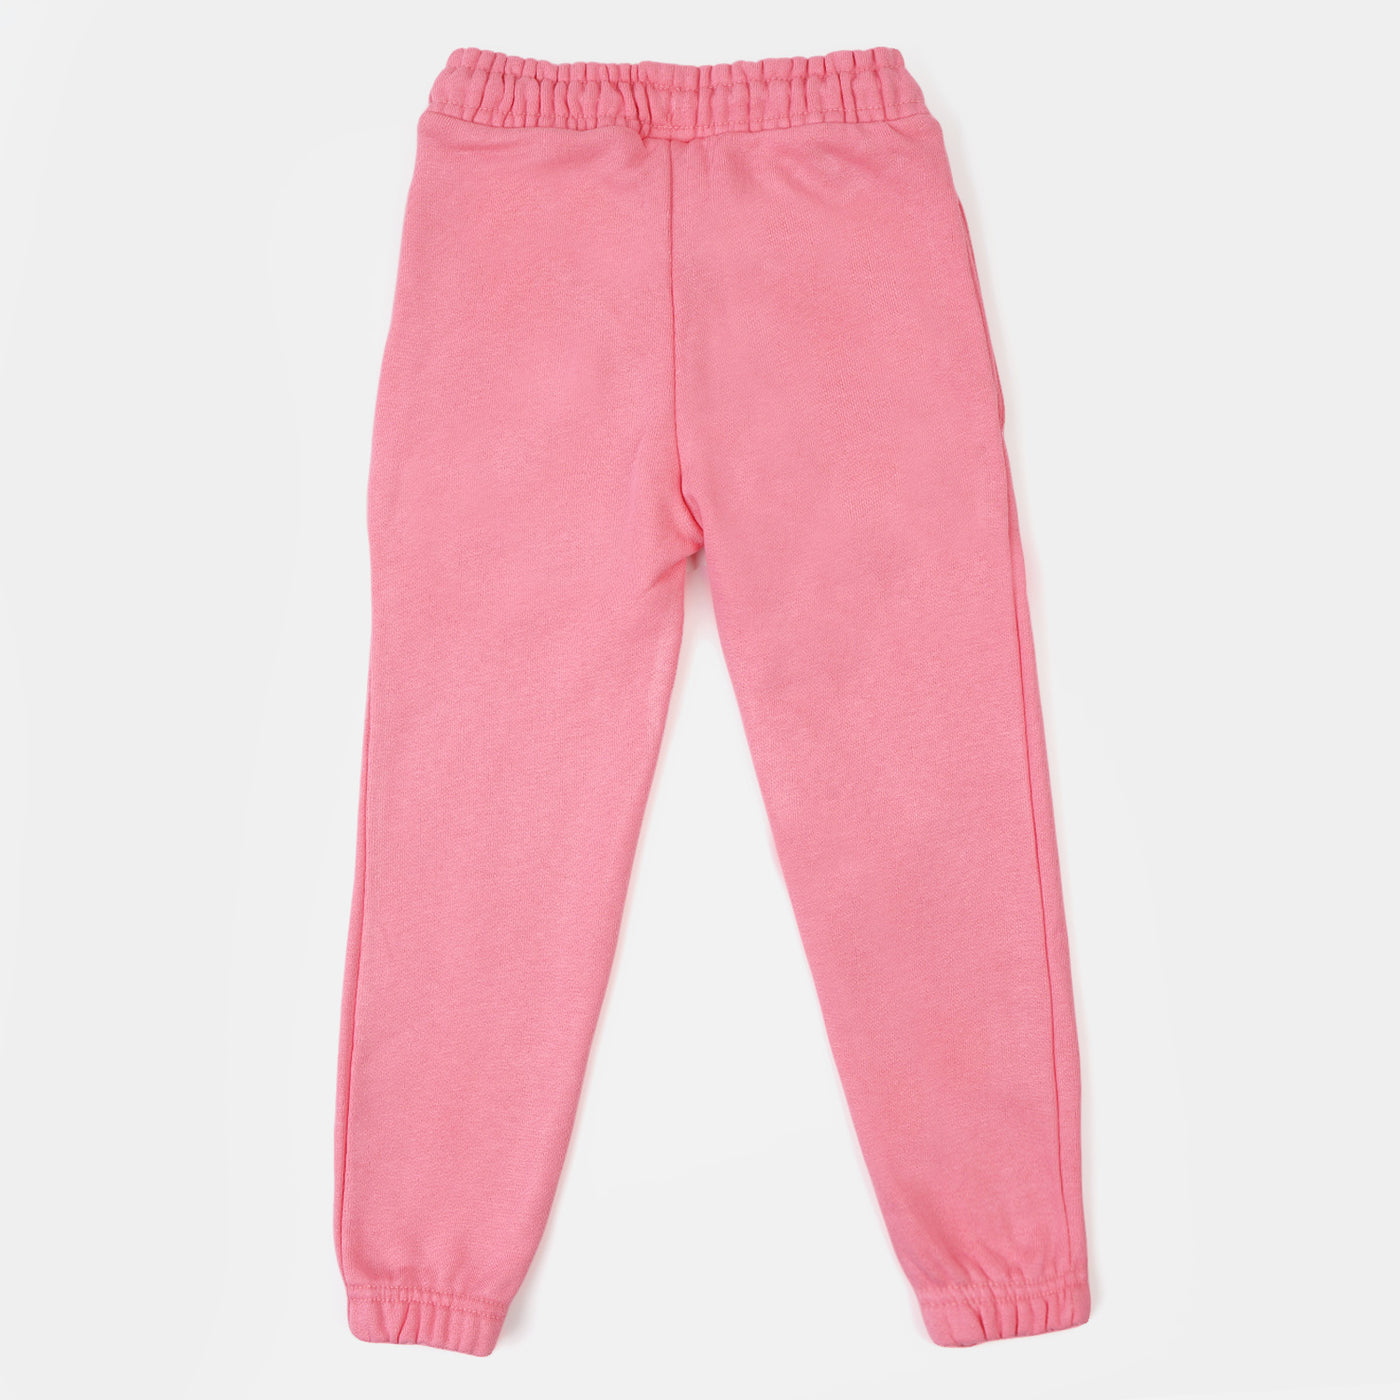 Boys Terry And Fleece Pajama Basic - Pink